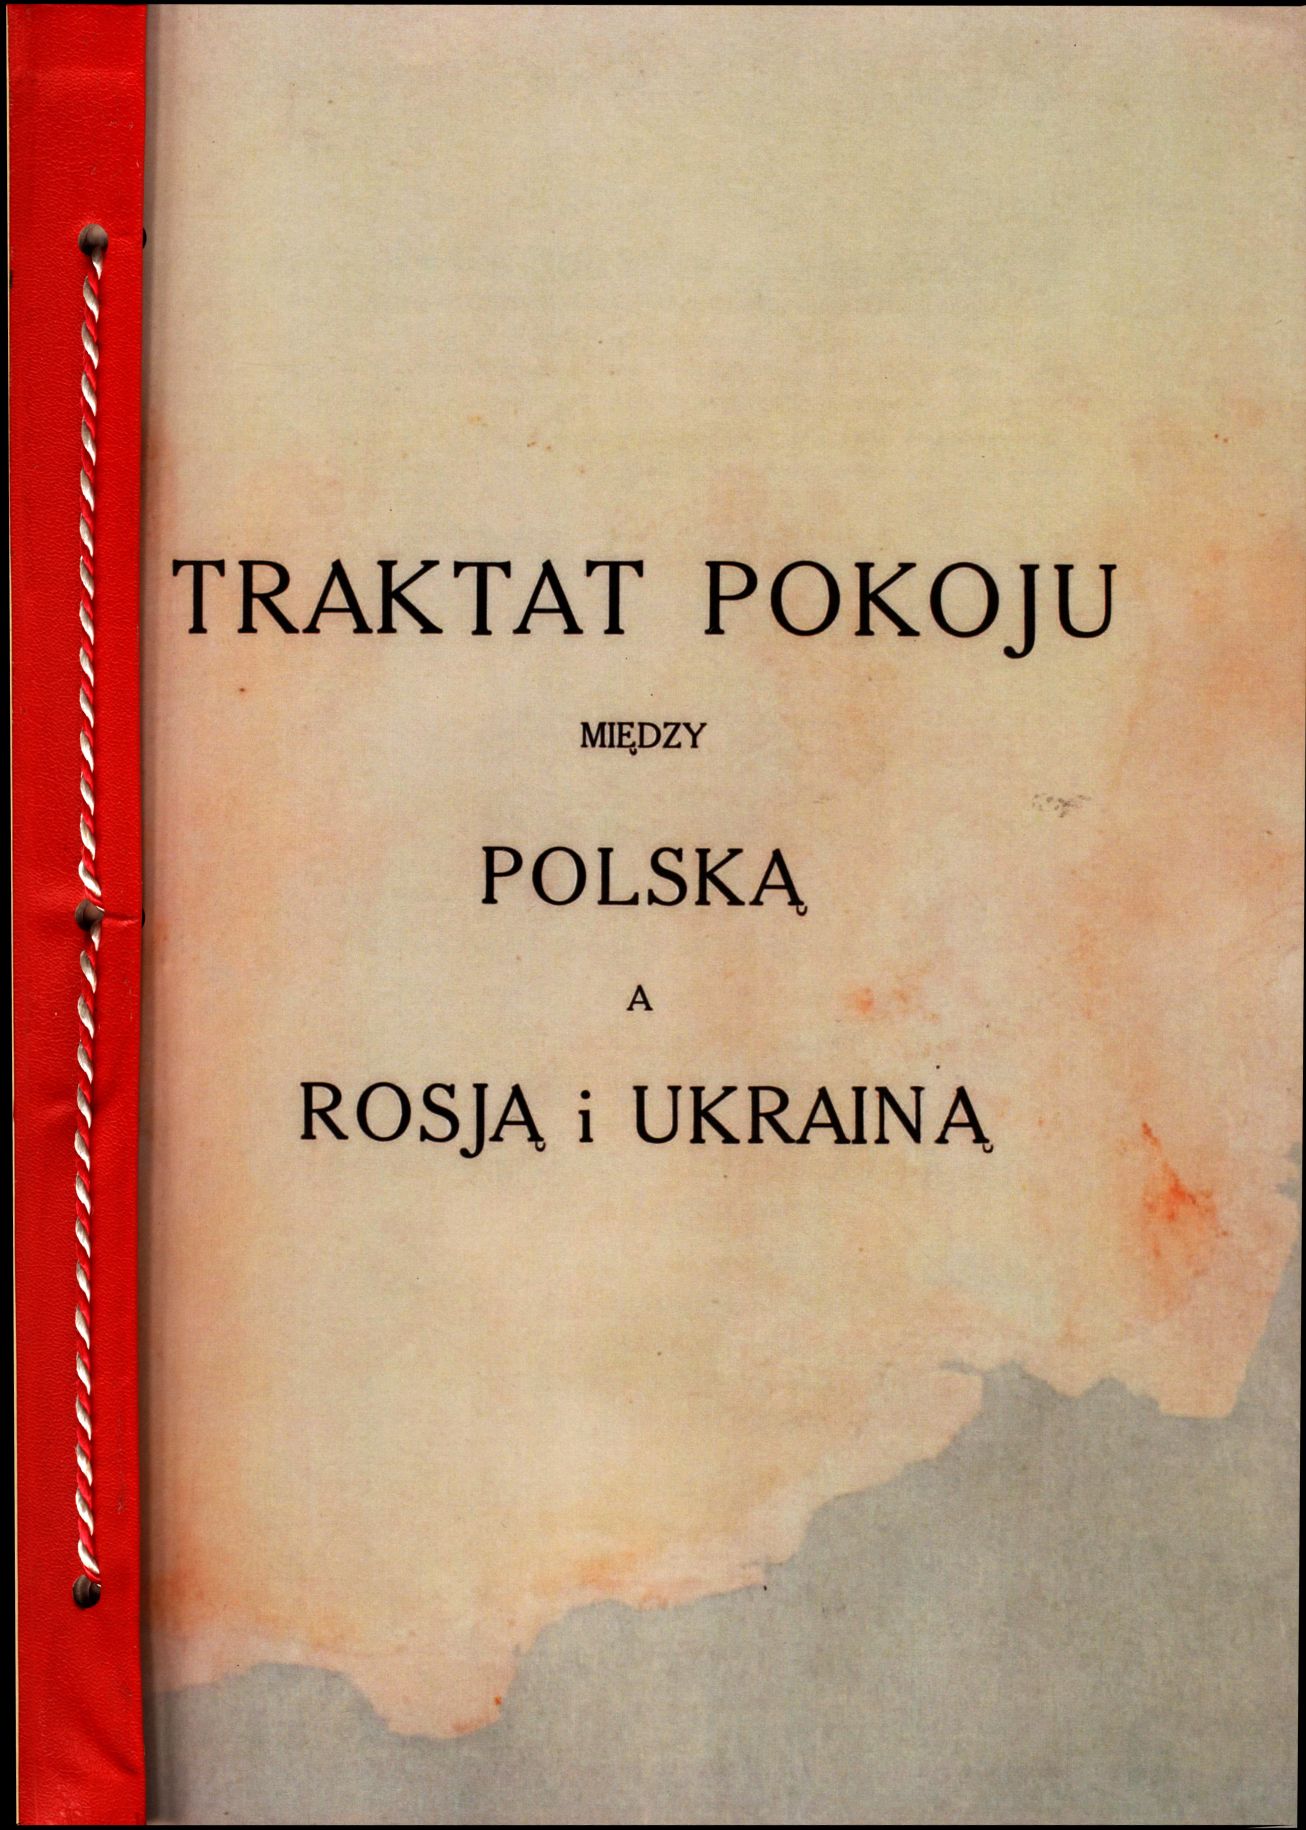 Traktat Pokoju między Polską a Rosją i Ukrainą podpisany w Rydze dnia 18 marca 1921 roku, s. 1, MSZ, sygn. 6739.